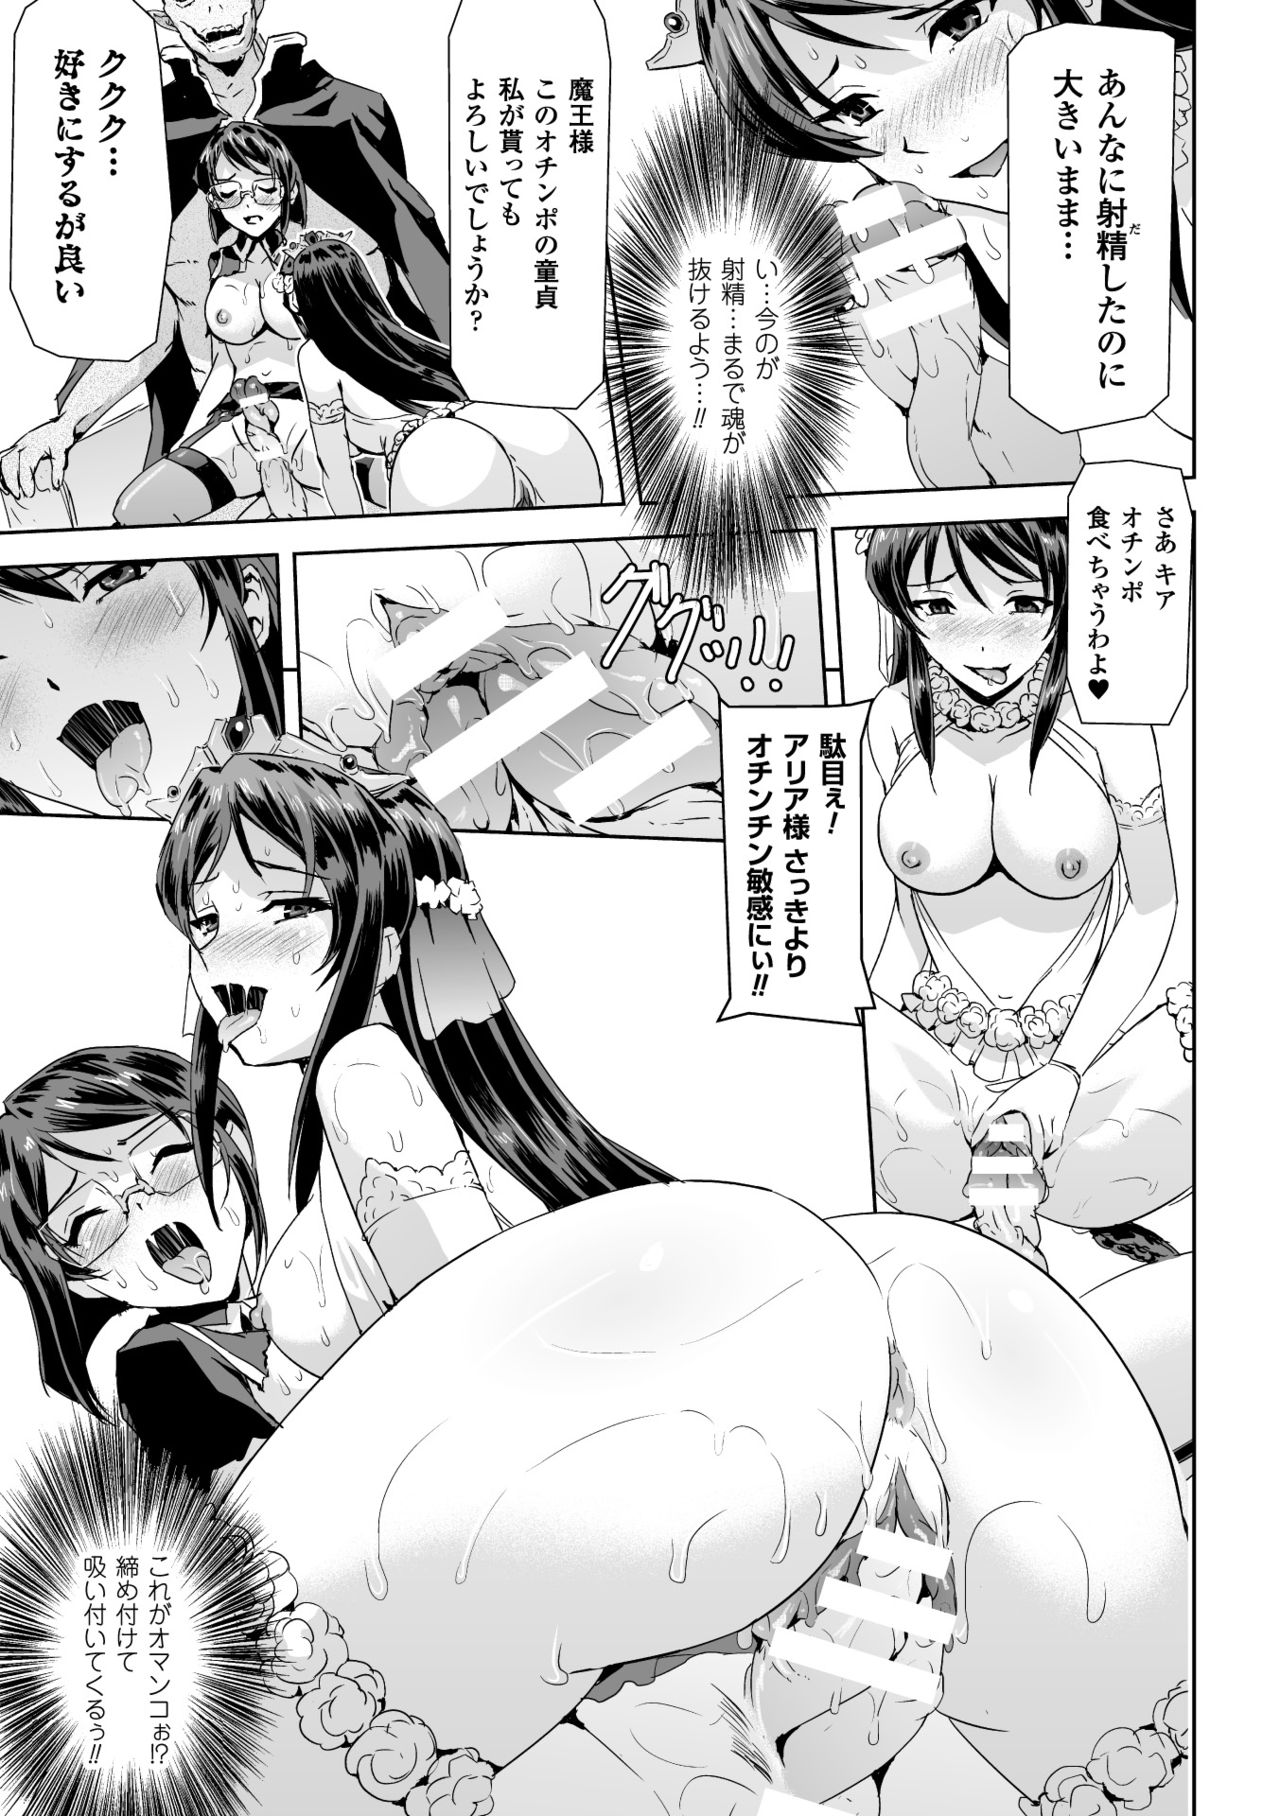 [Anthology] Seigi no Heroine Kangoku File Vol. 2 [Digital] page 31 full